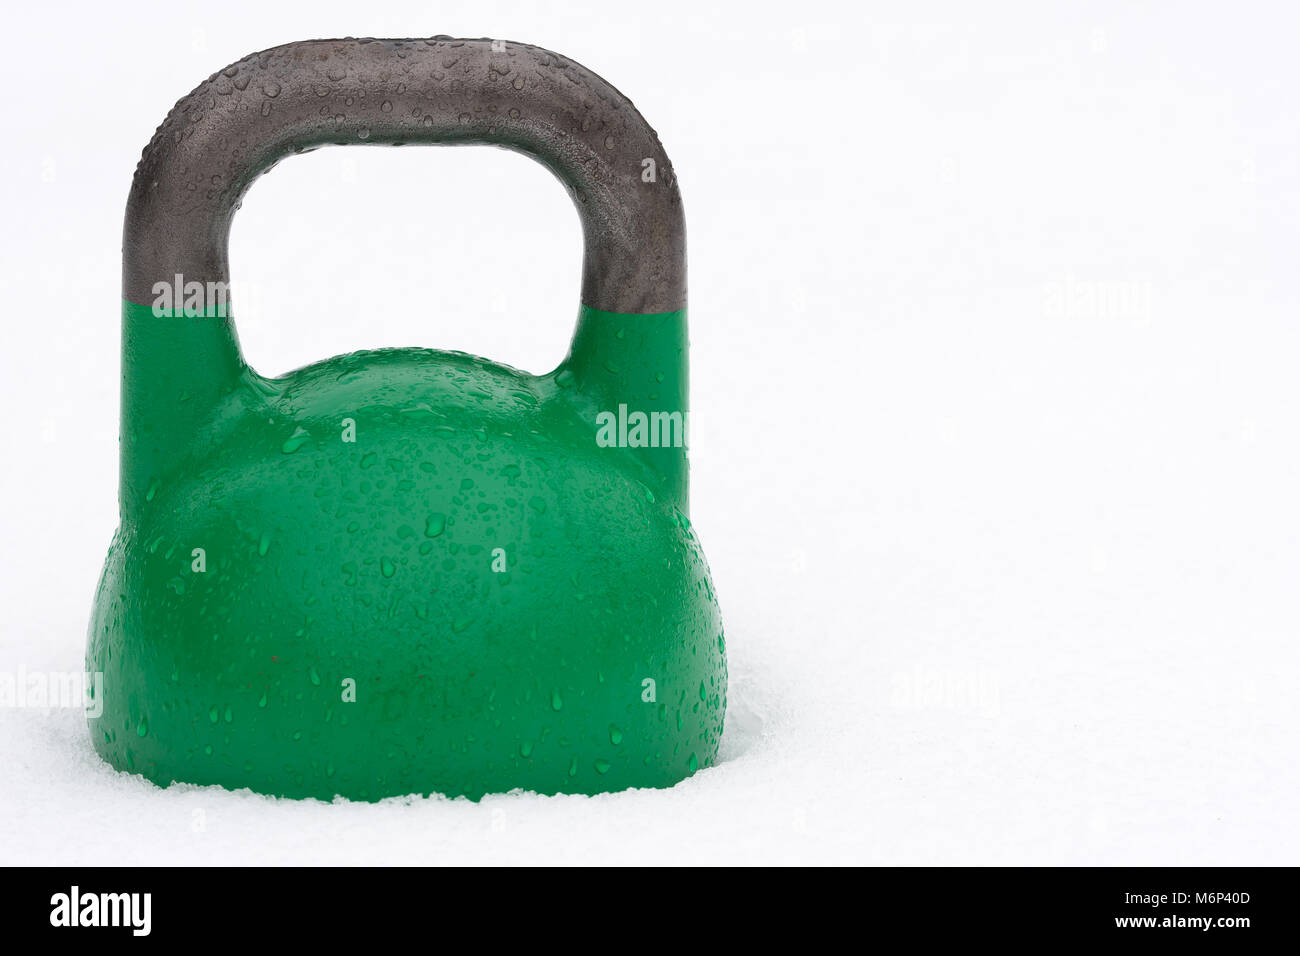 24kg kettlebell compétition verte couverte de gouttelettes d'eau à l'extérieur dans la neige. Copie potentiel espace à droite de kettlebell. Banque D'Images